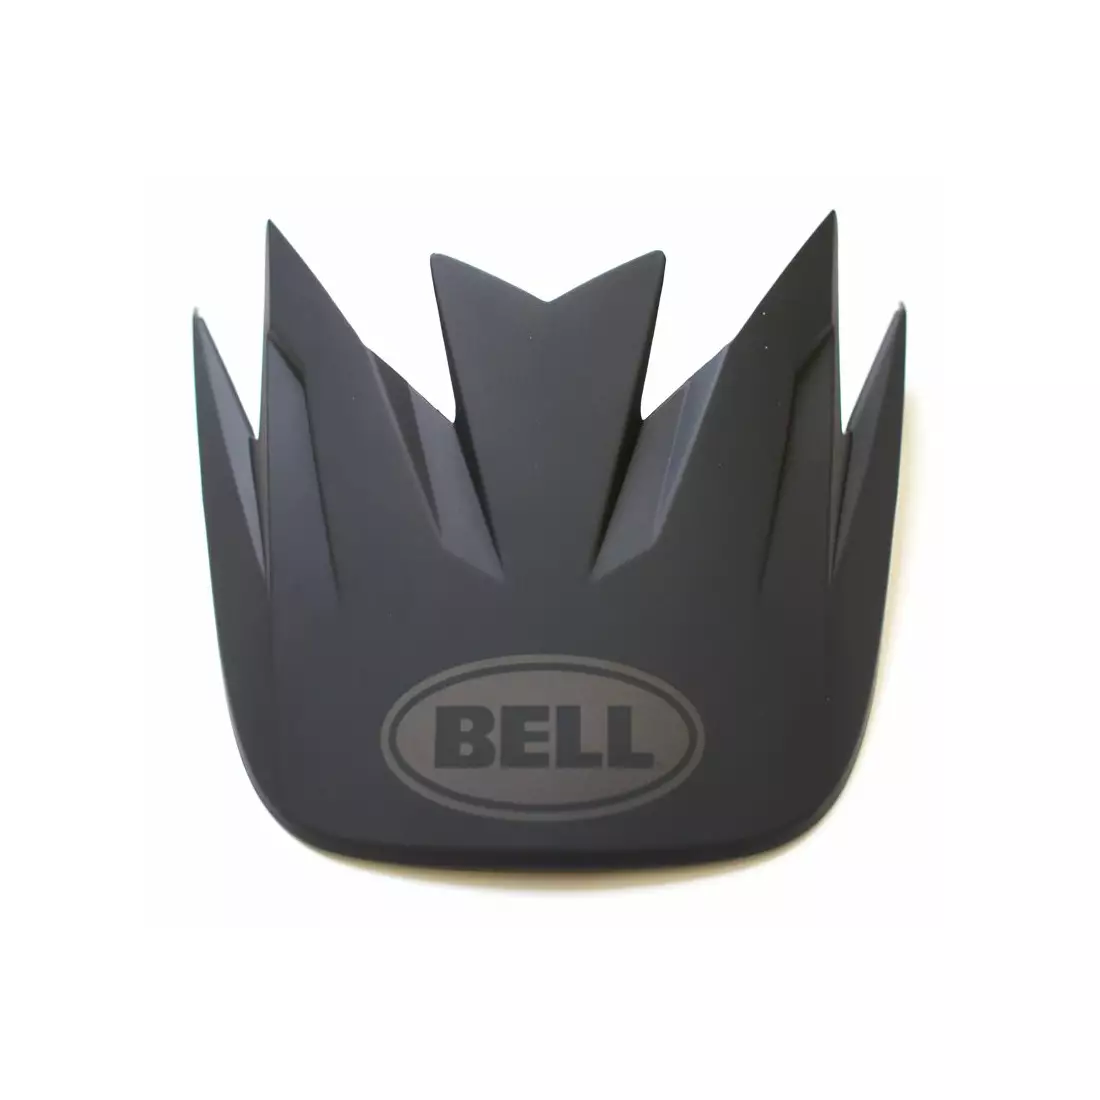 BELL canopy for bicycle helmet SANCTION matte black BEL-7085300